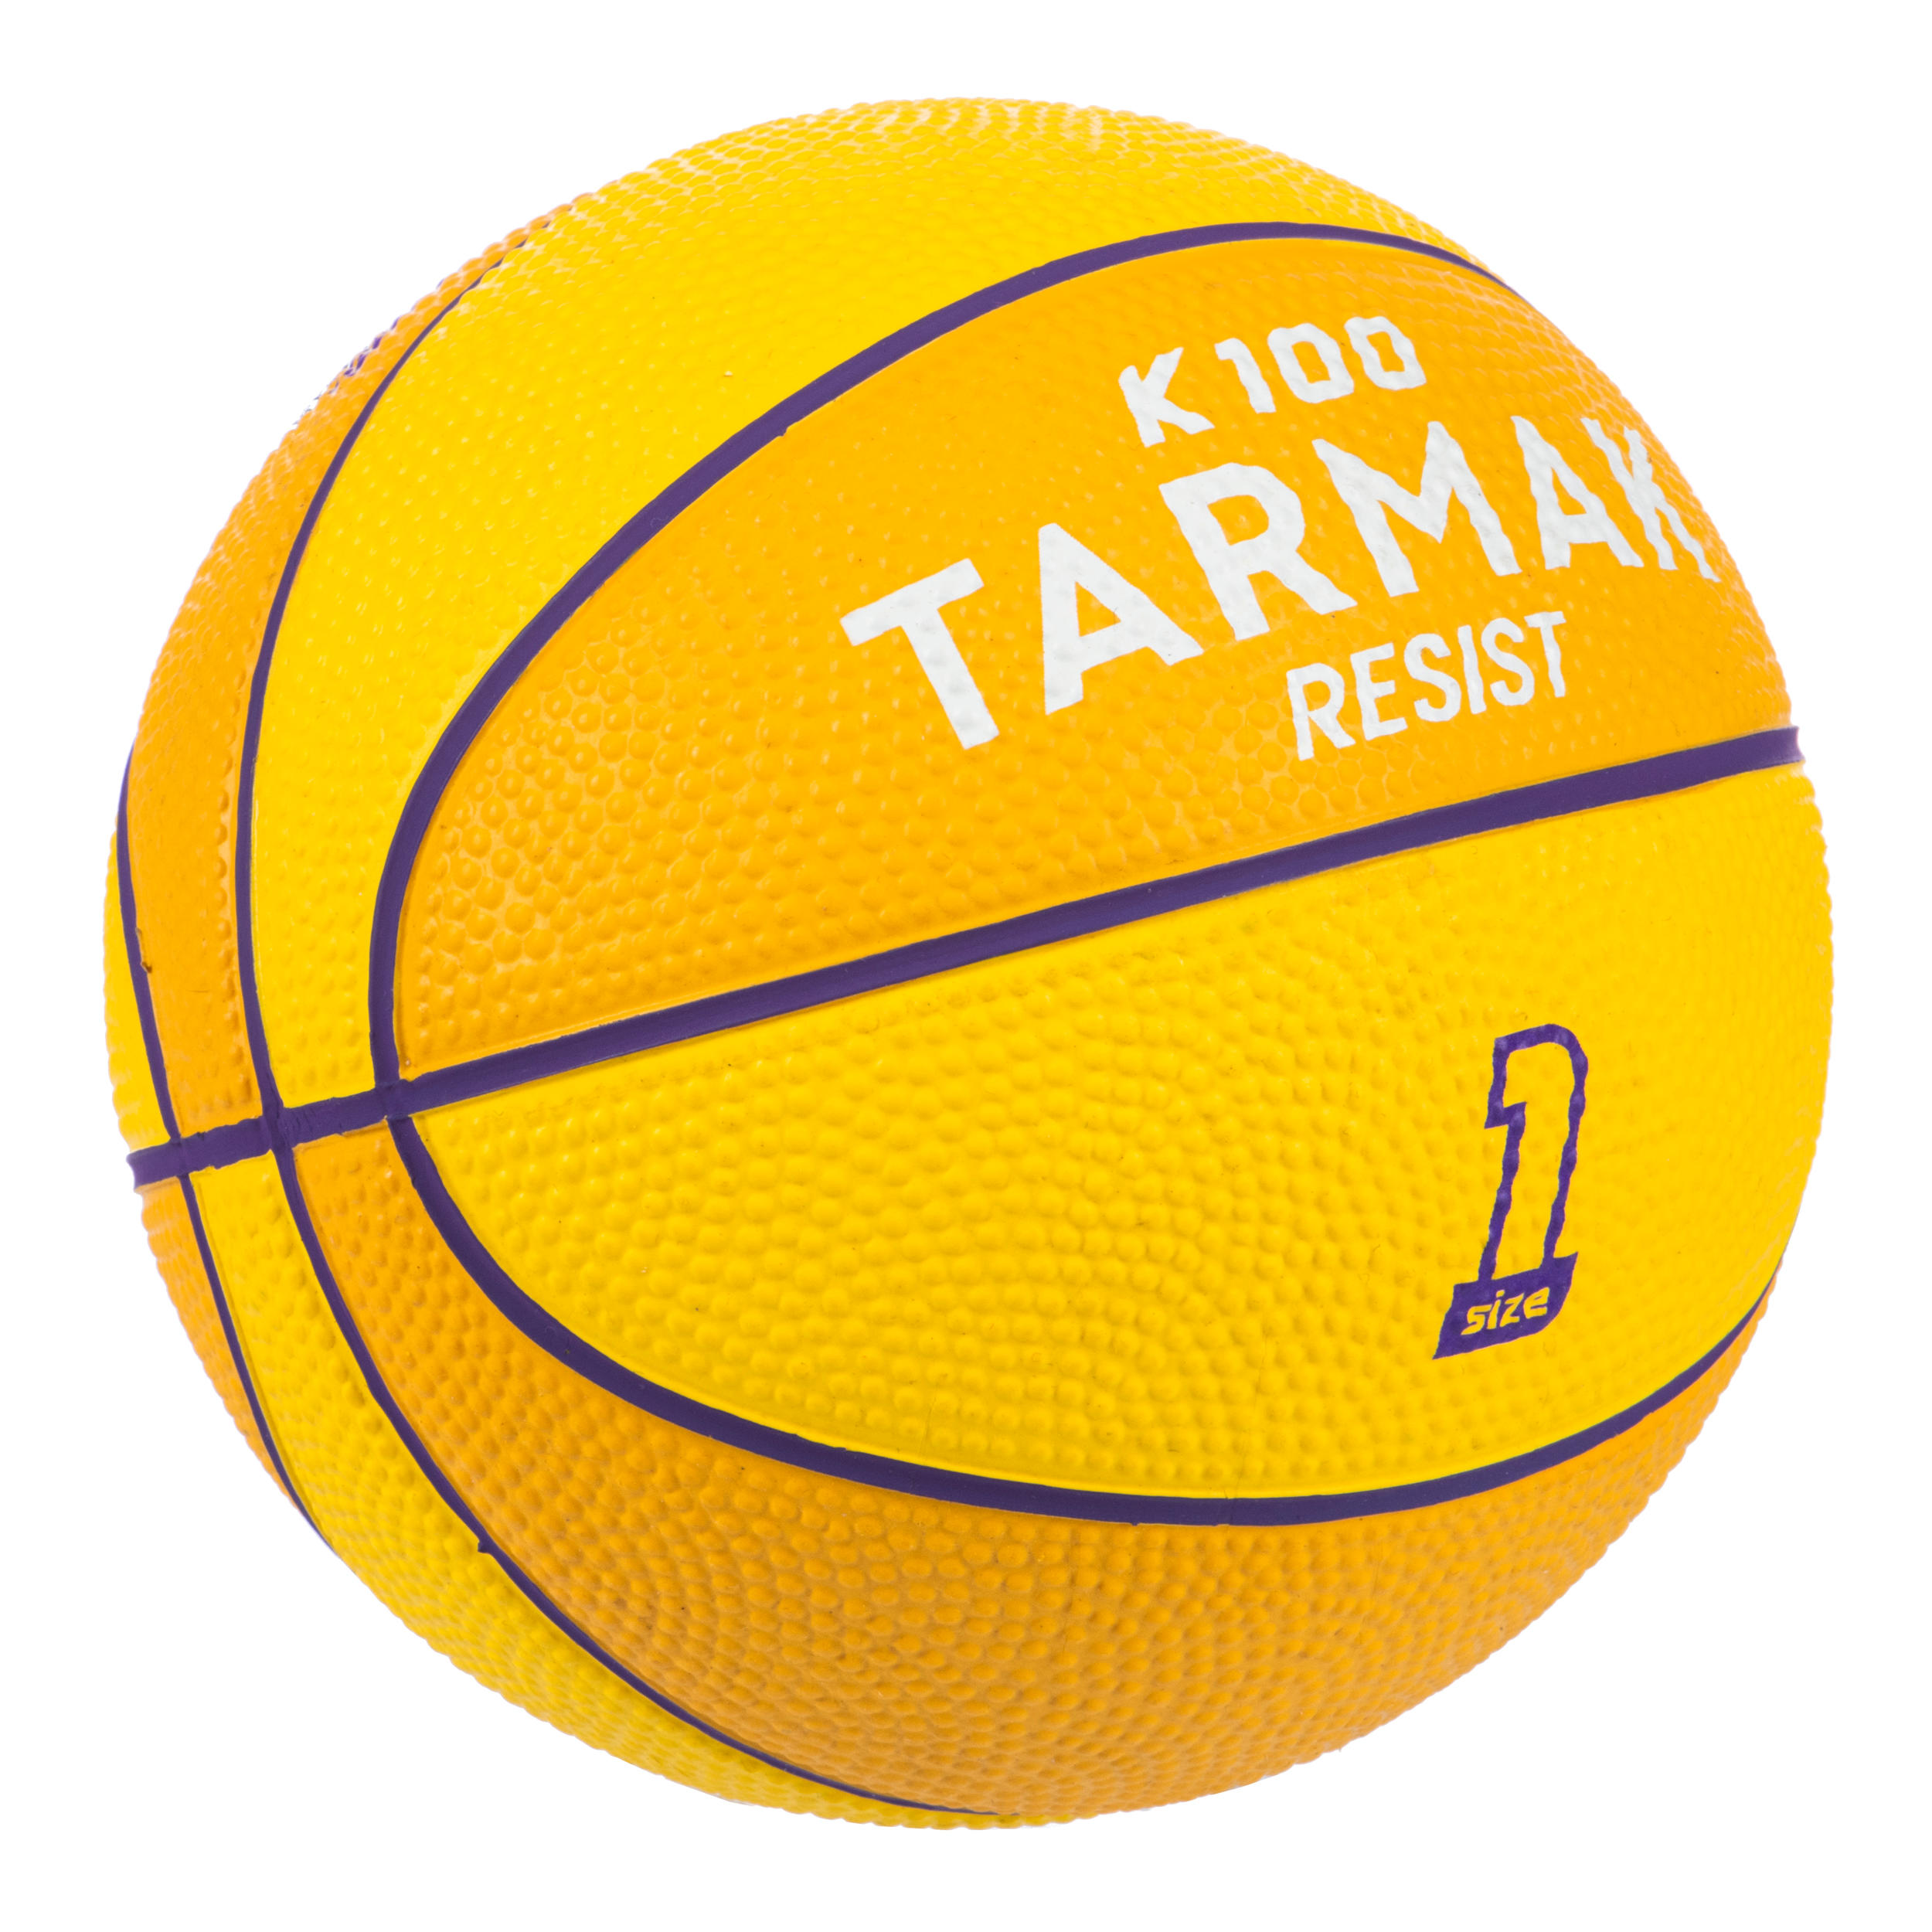 meteor Pallone Basket Palla Basketball Taglia 1 Dimensione Bambini Giovani Pallacanestro Mini Layup 